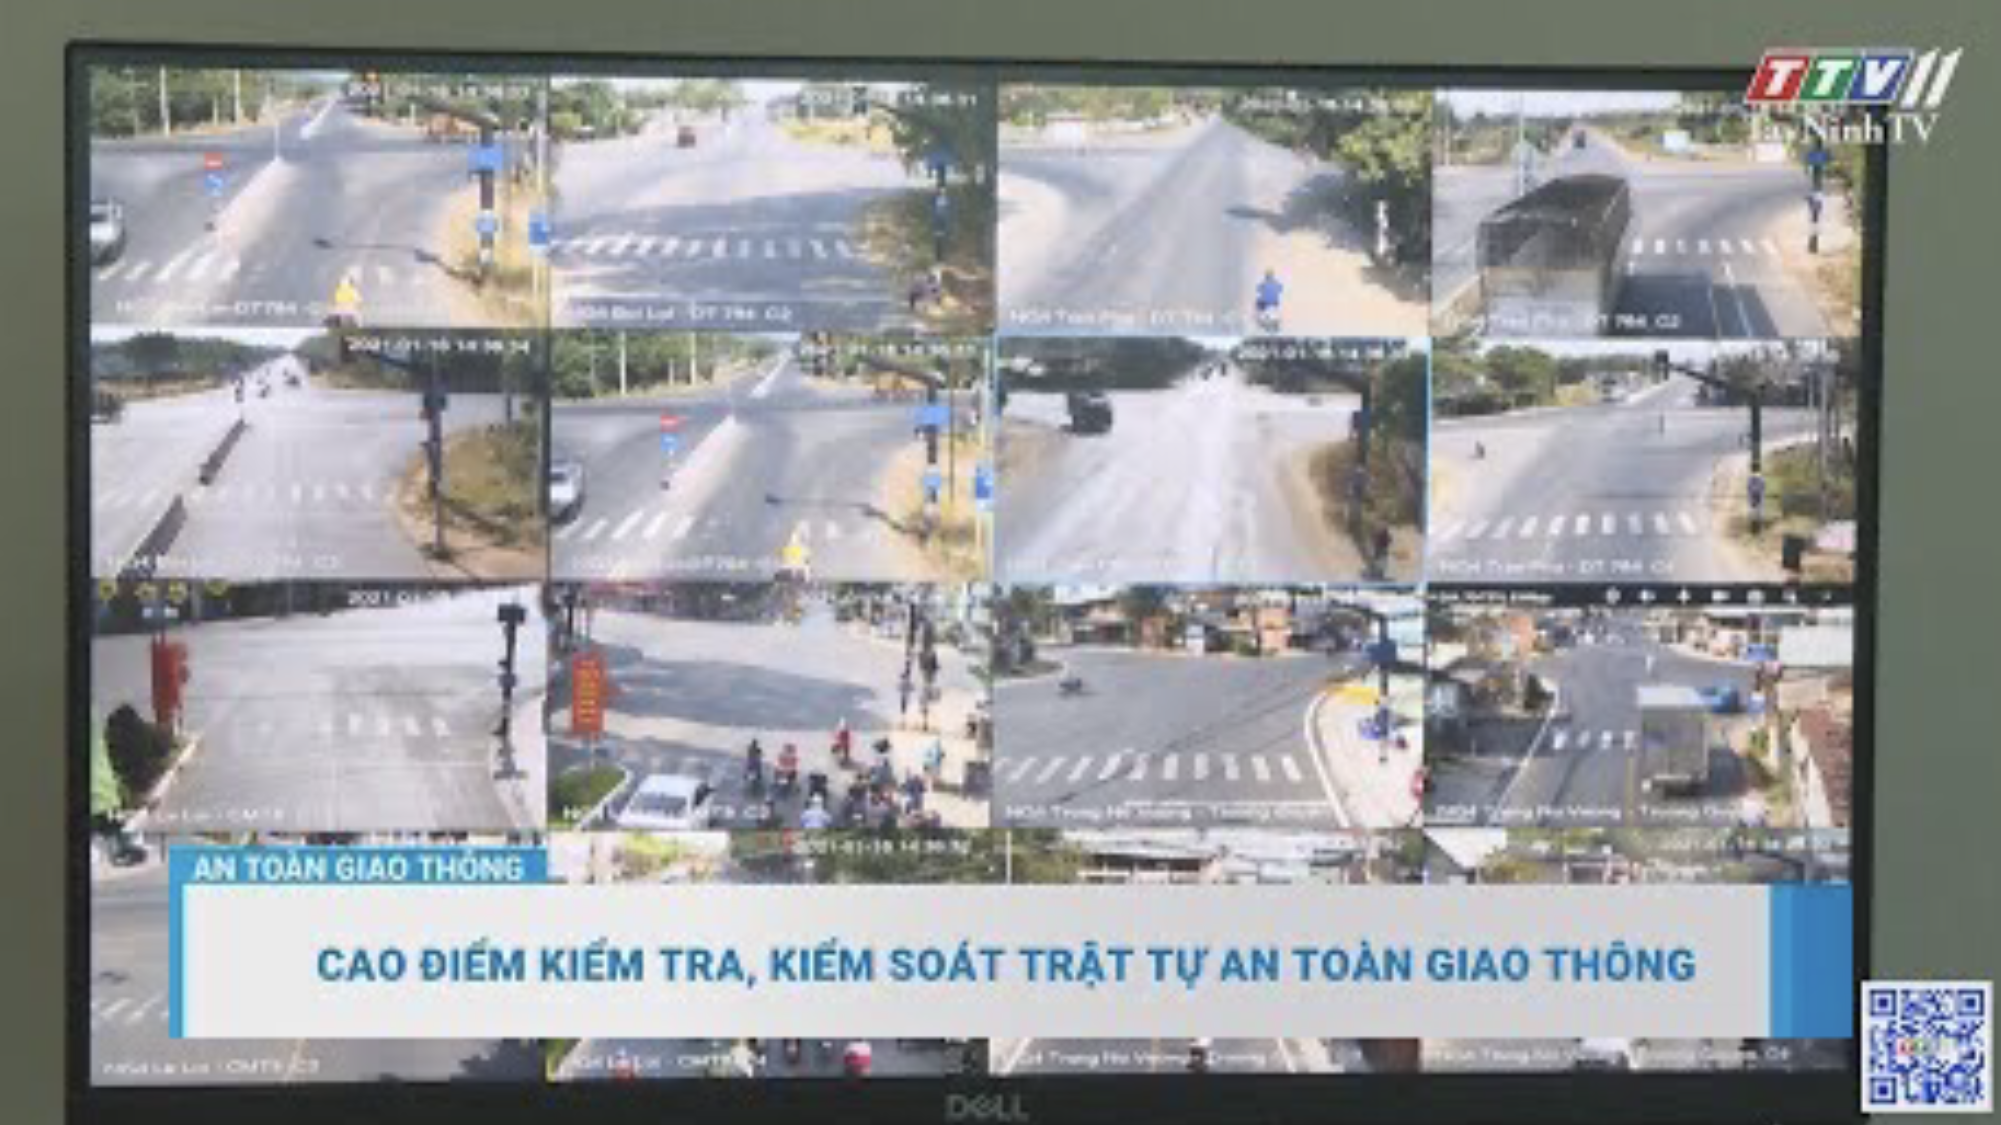 Cao điểm kiểm tra, kiểm soát trật tự an toàn giao thông | An toàn giao thông | TayNinhTV